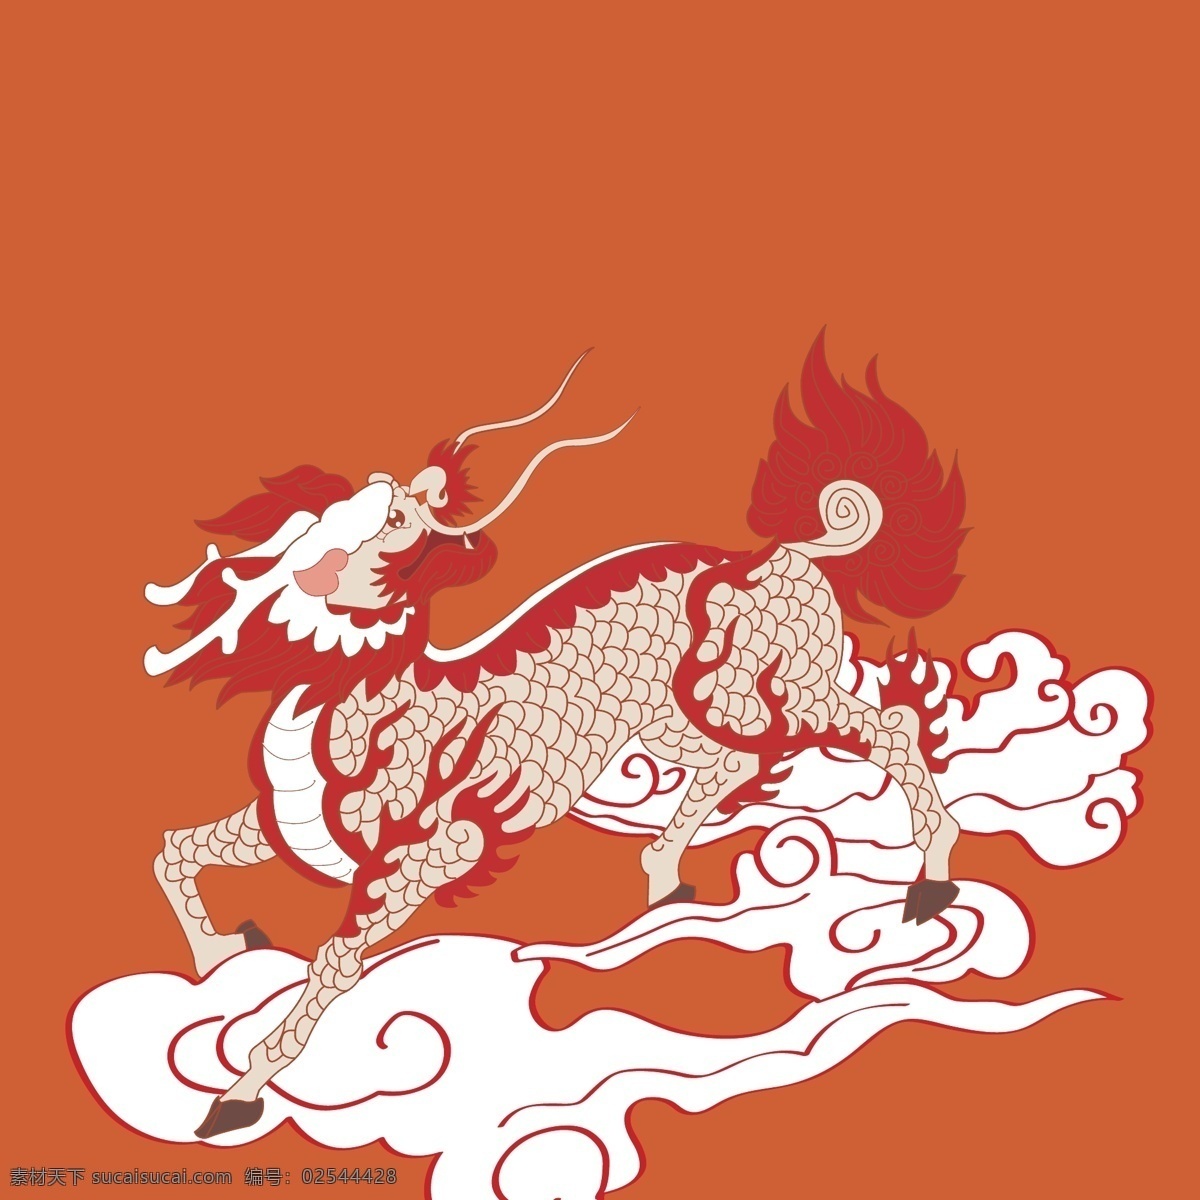 麒麟 圣兽 灵兽 传统素材 中国风